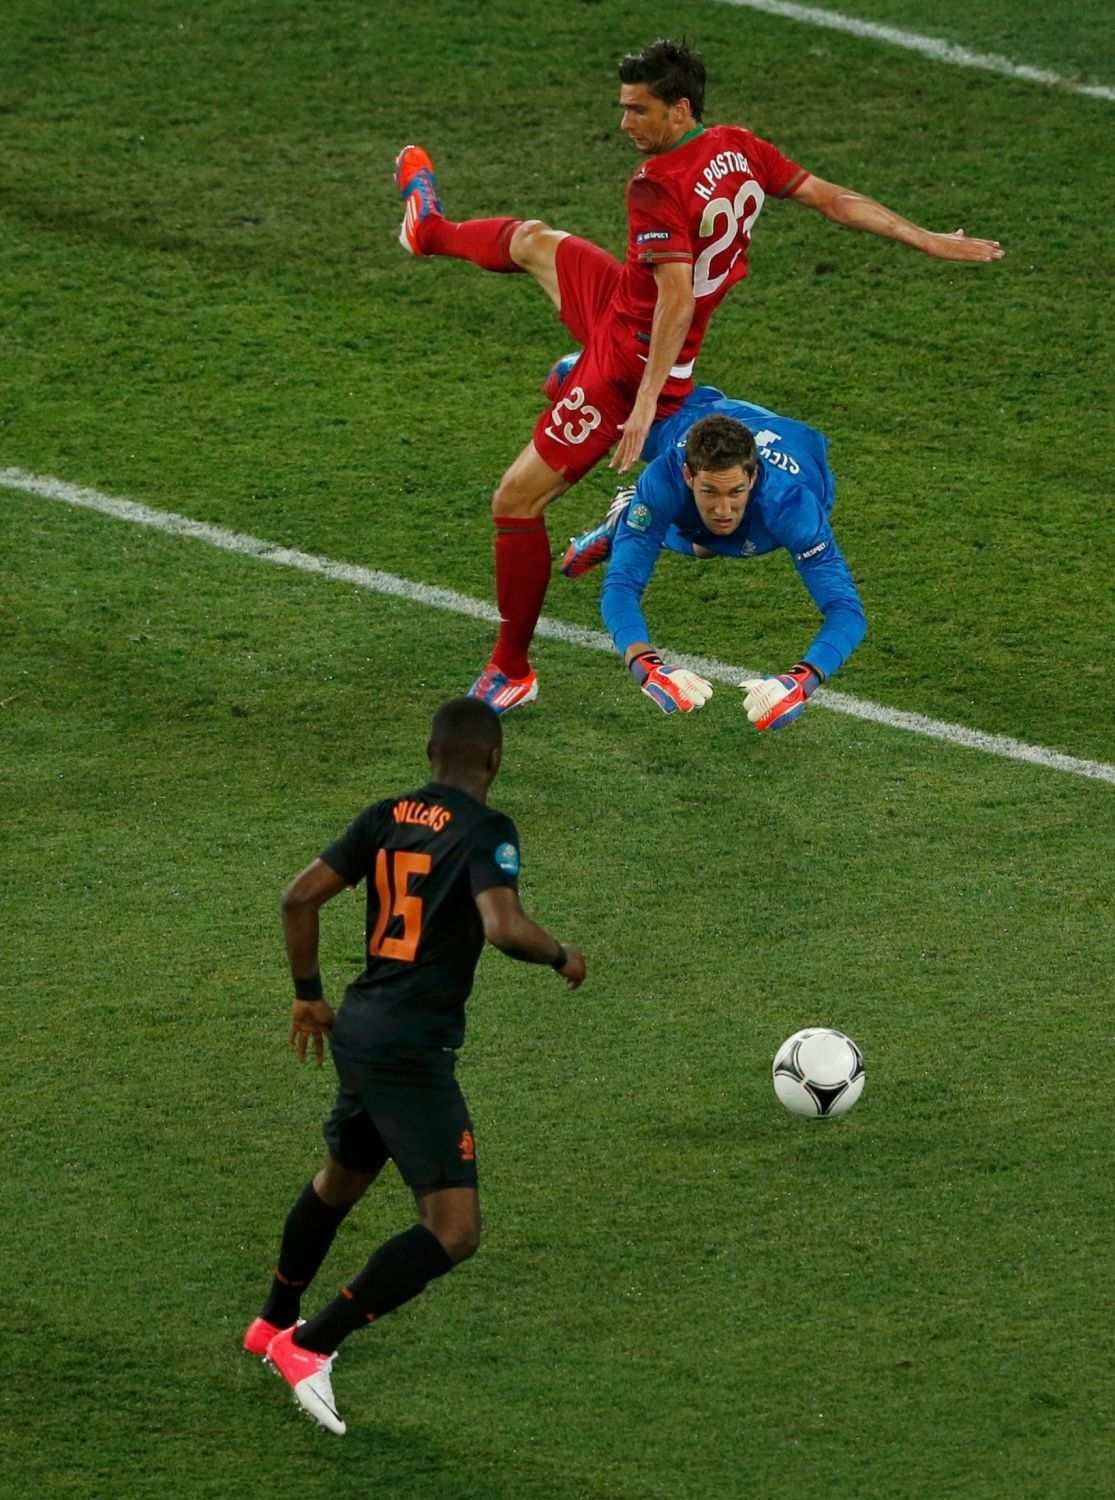 Nizozemský brankář Maarten Stekelenburg likviduje společně s Jetrem Willemsem pokus Portugalce Heldera Postigy v utkání skupiny B na Euru 2012